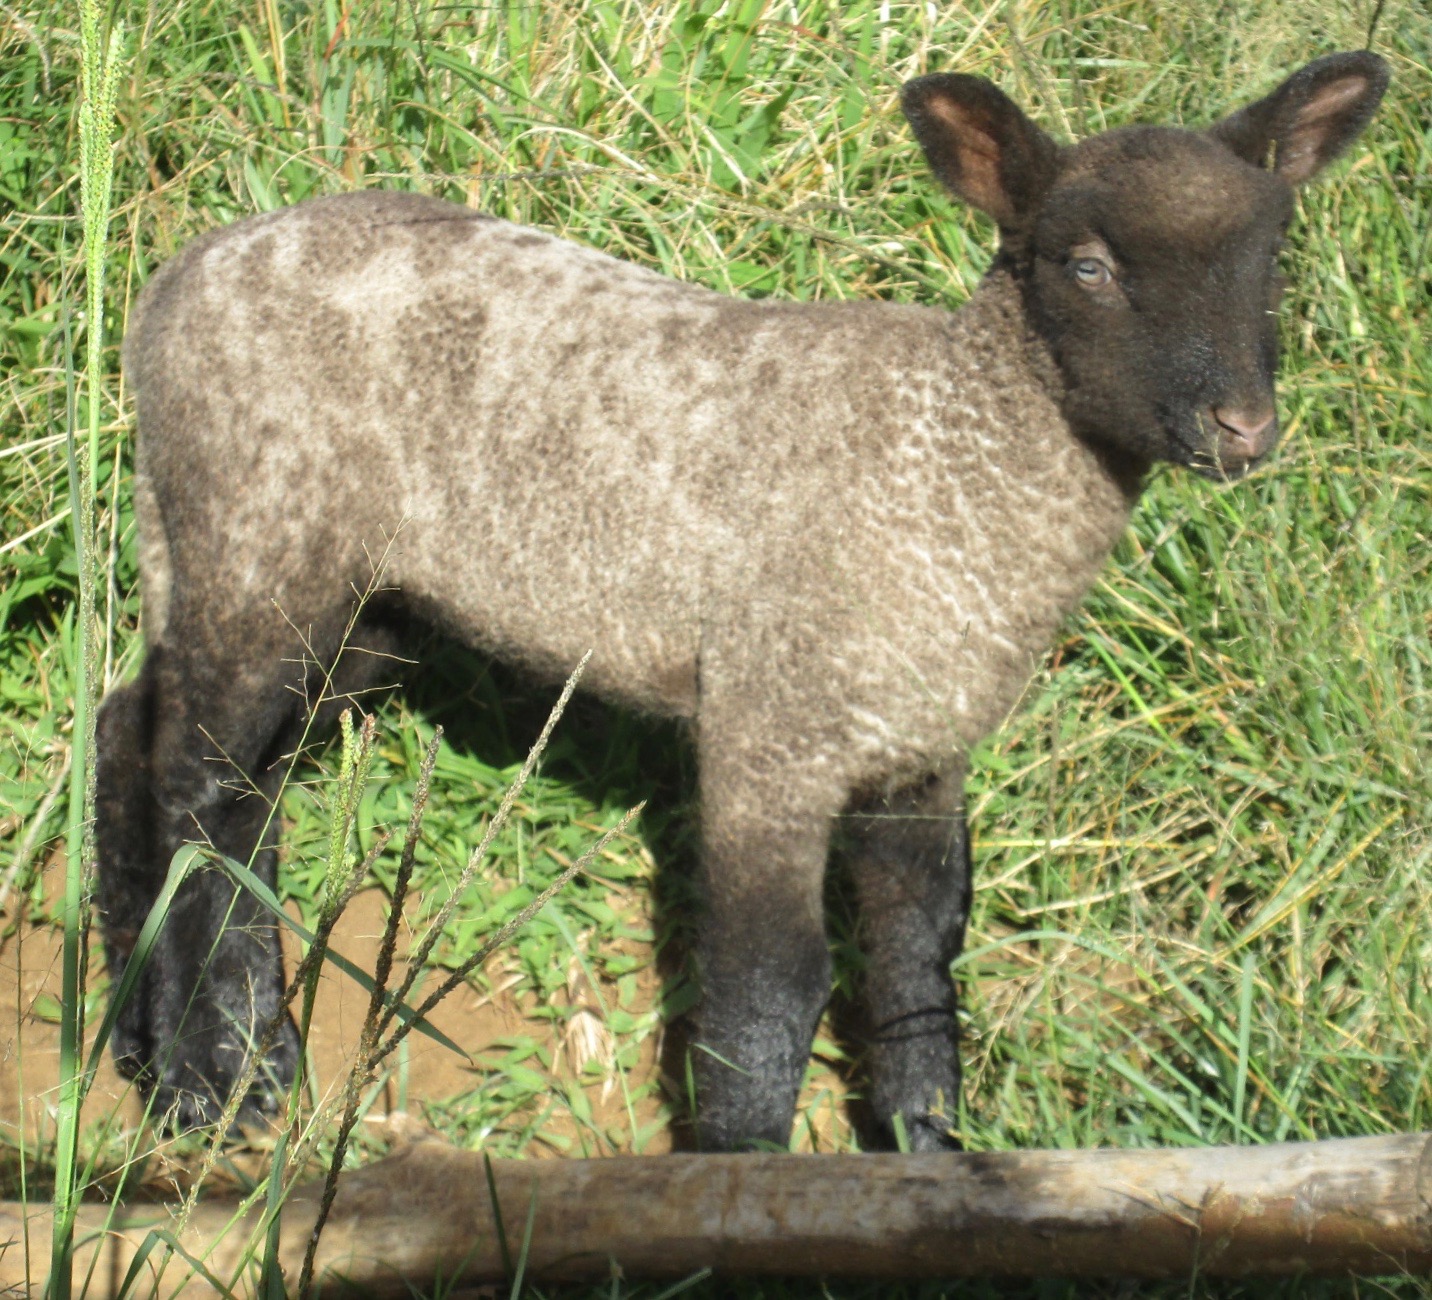 Young Clun lamb